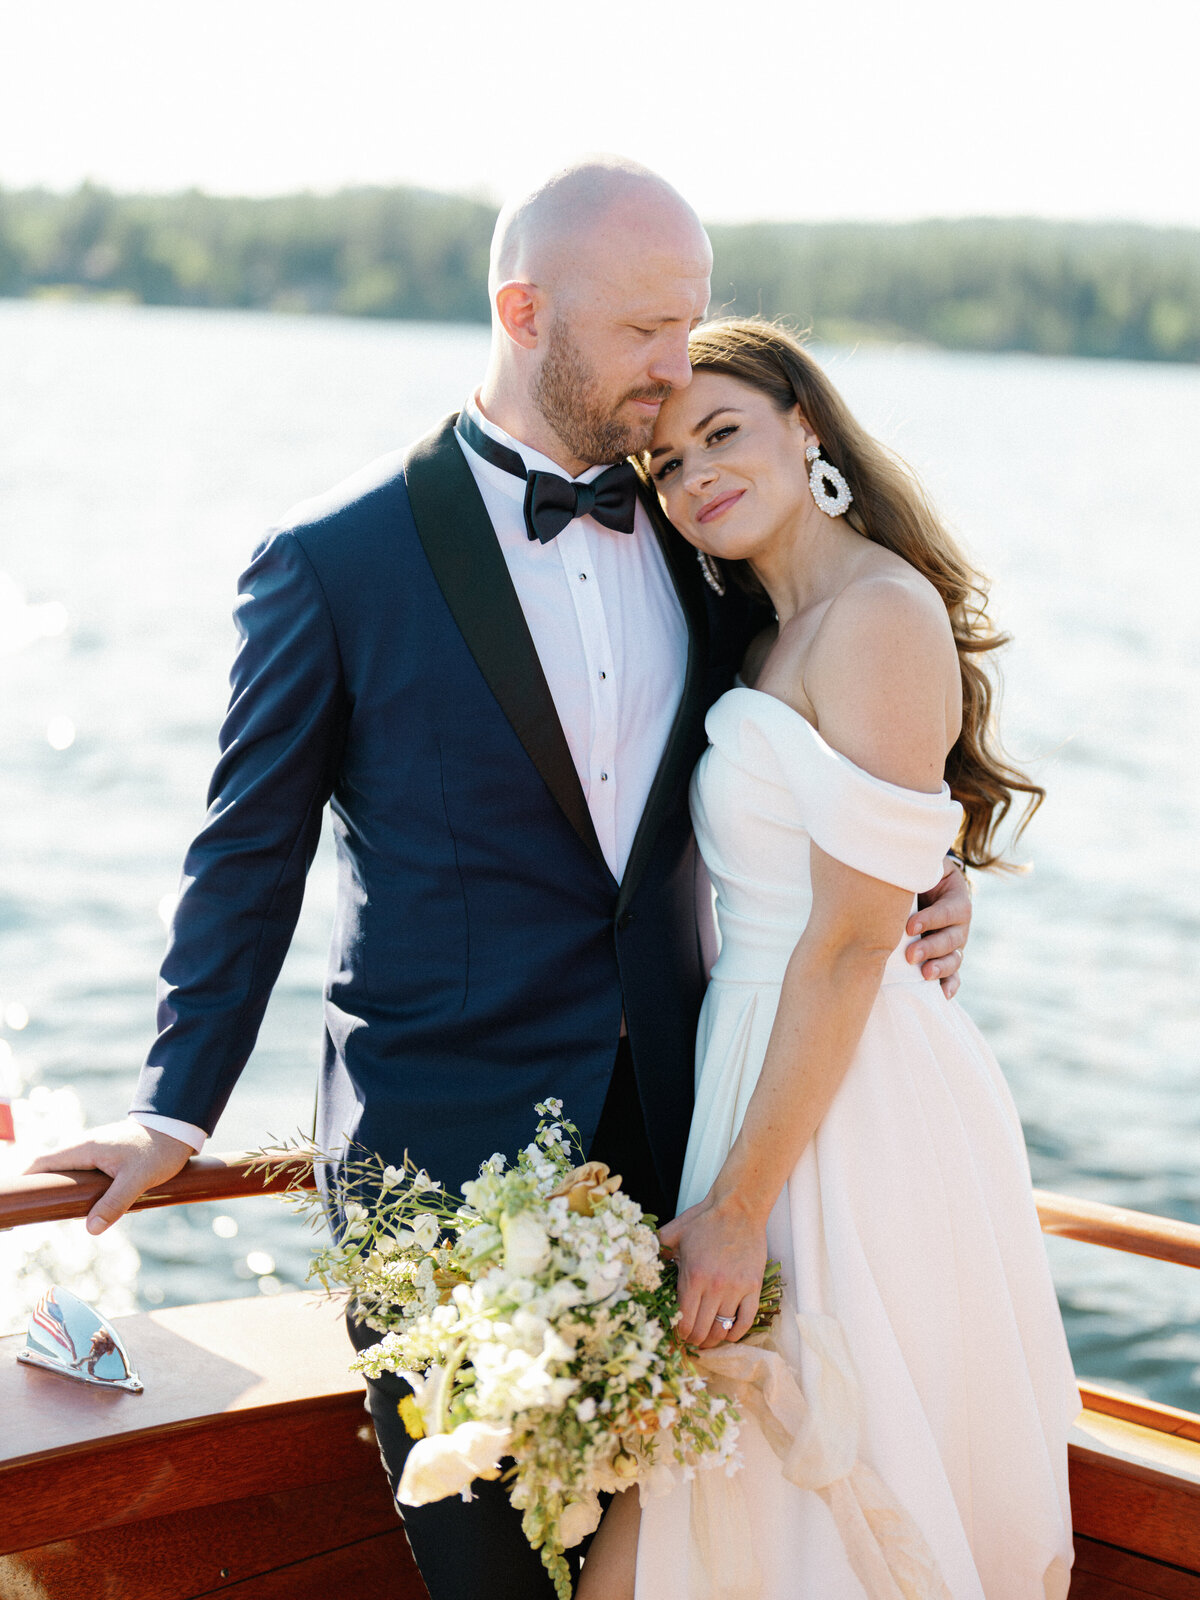 Laura + Logan Wedding - Bride + Groom Boat-9